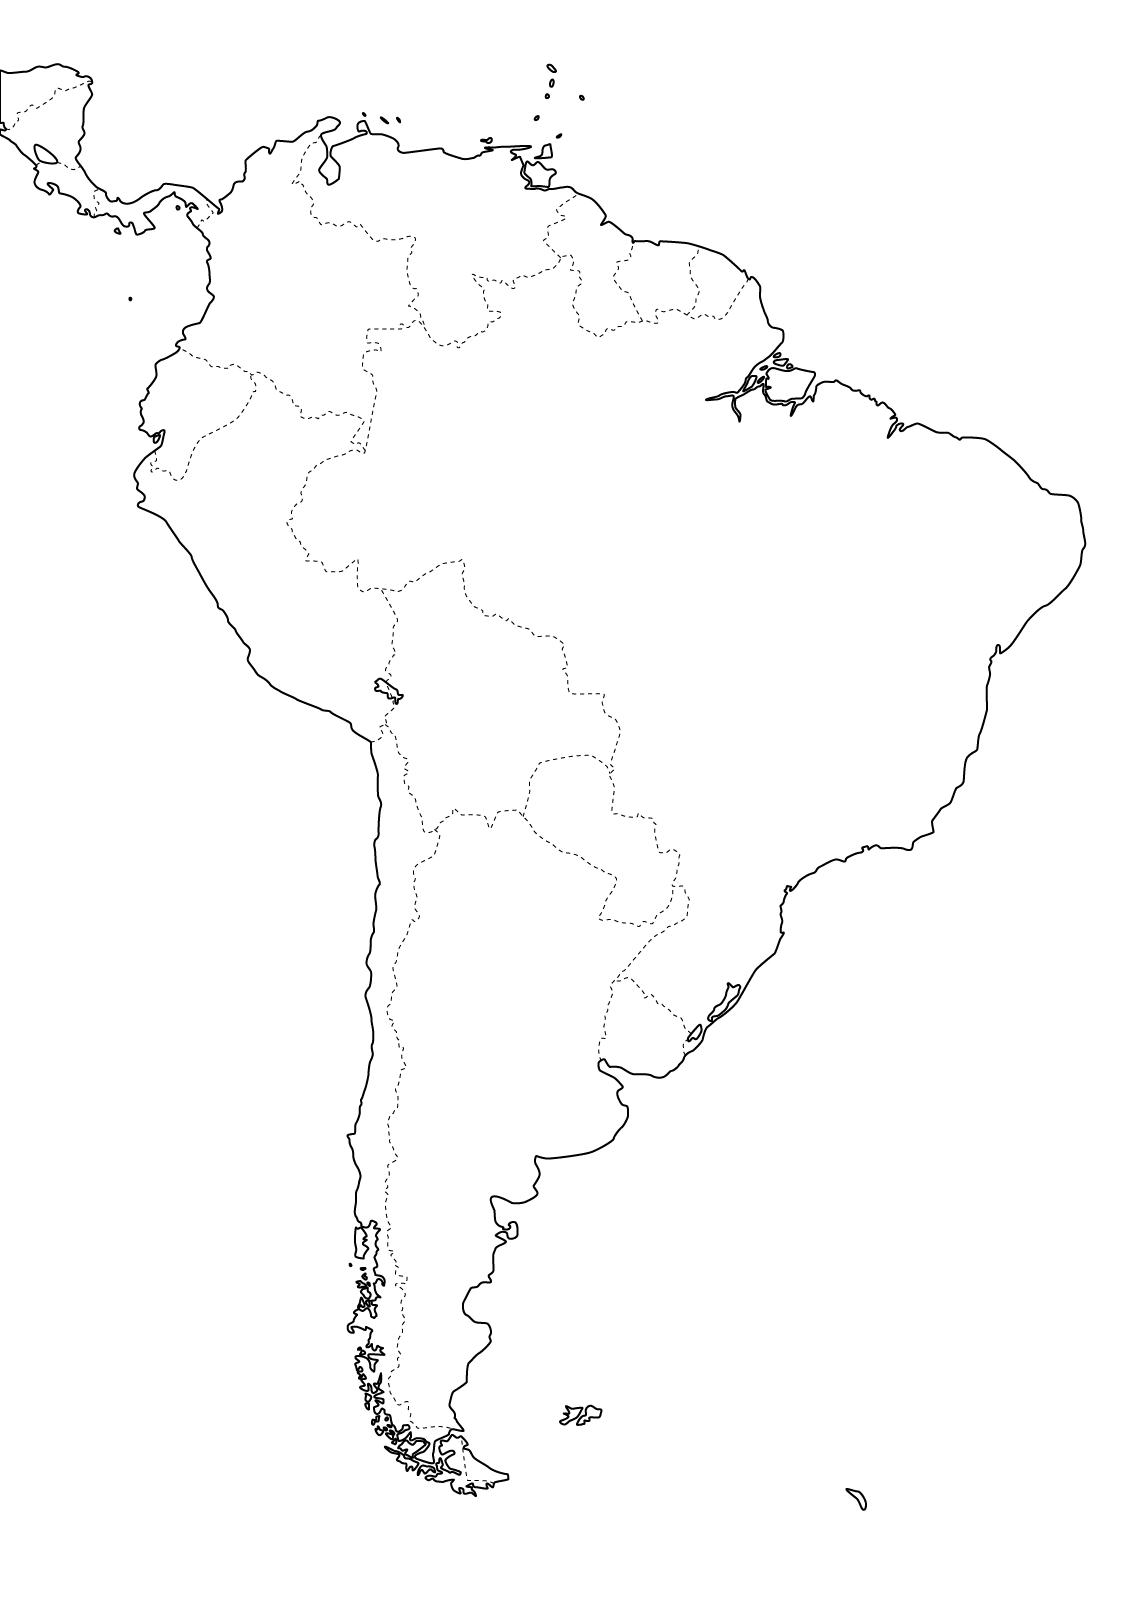 Mapa de países de Sudamérica. Freemap